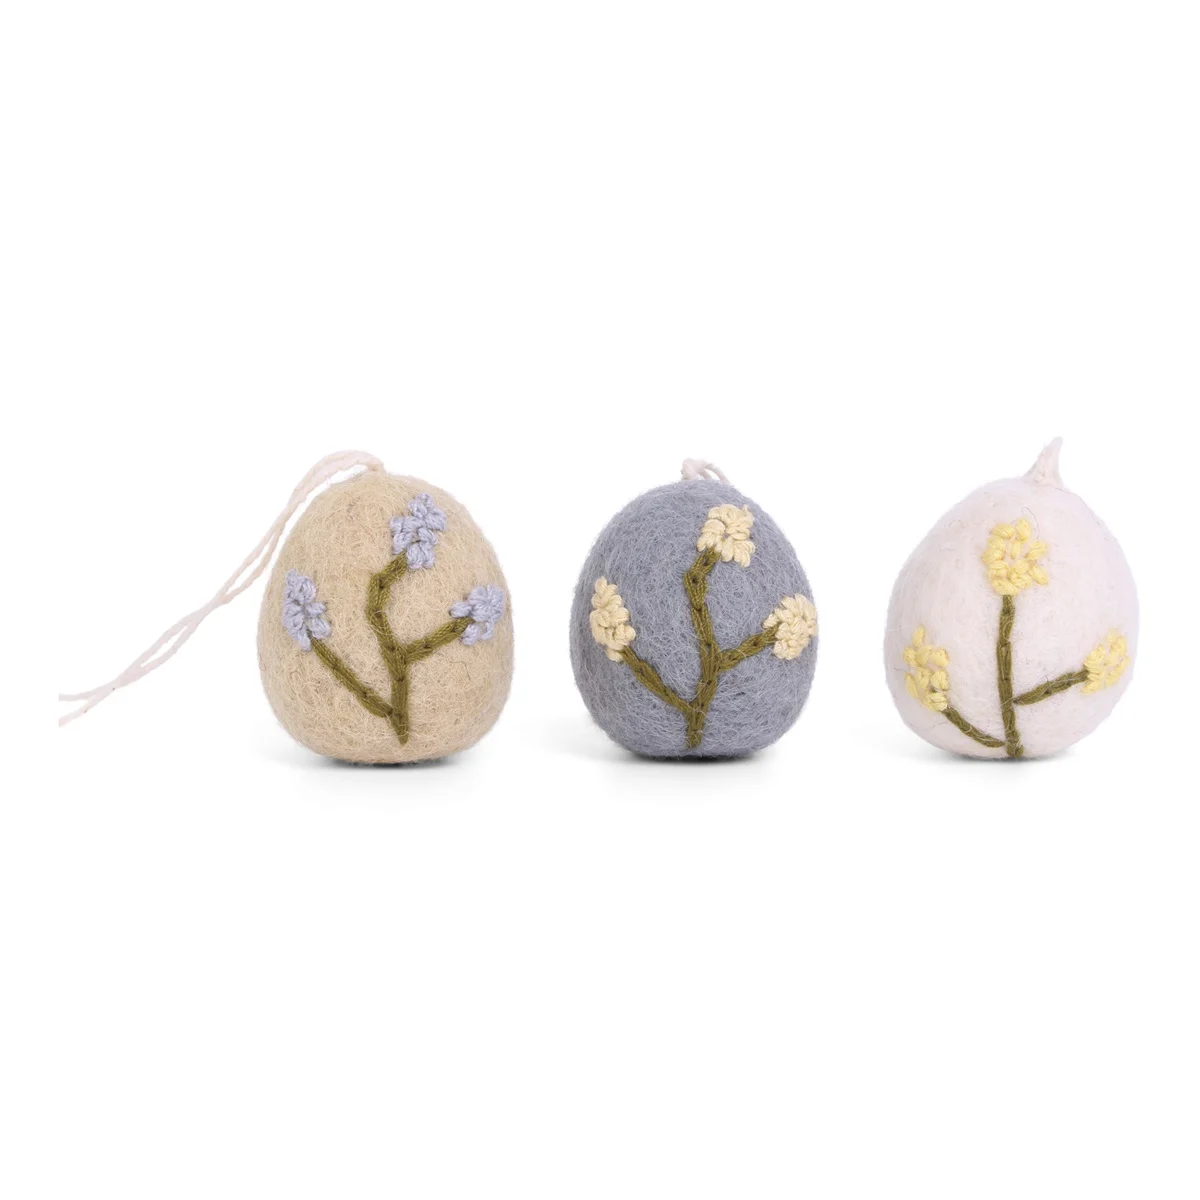 Gry & Sif handgefilzte Eieranhänger mit zarter Blumenstickerei beige, blau und weiß 100% Handarbeit 3-er Set